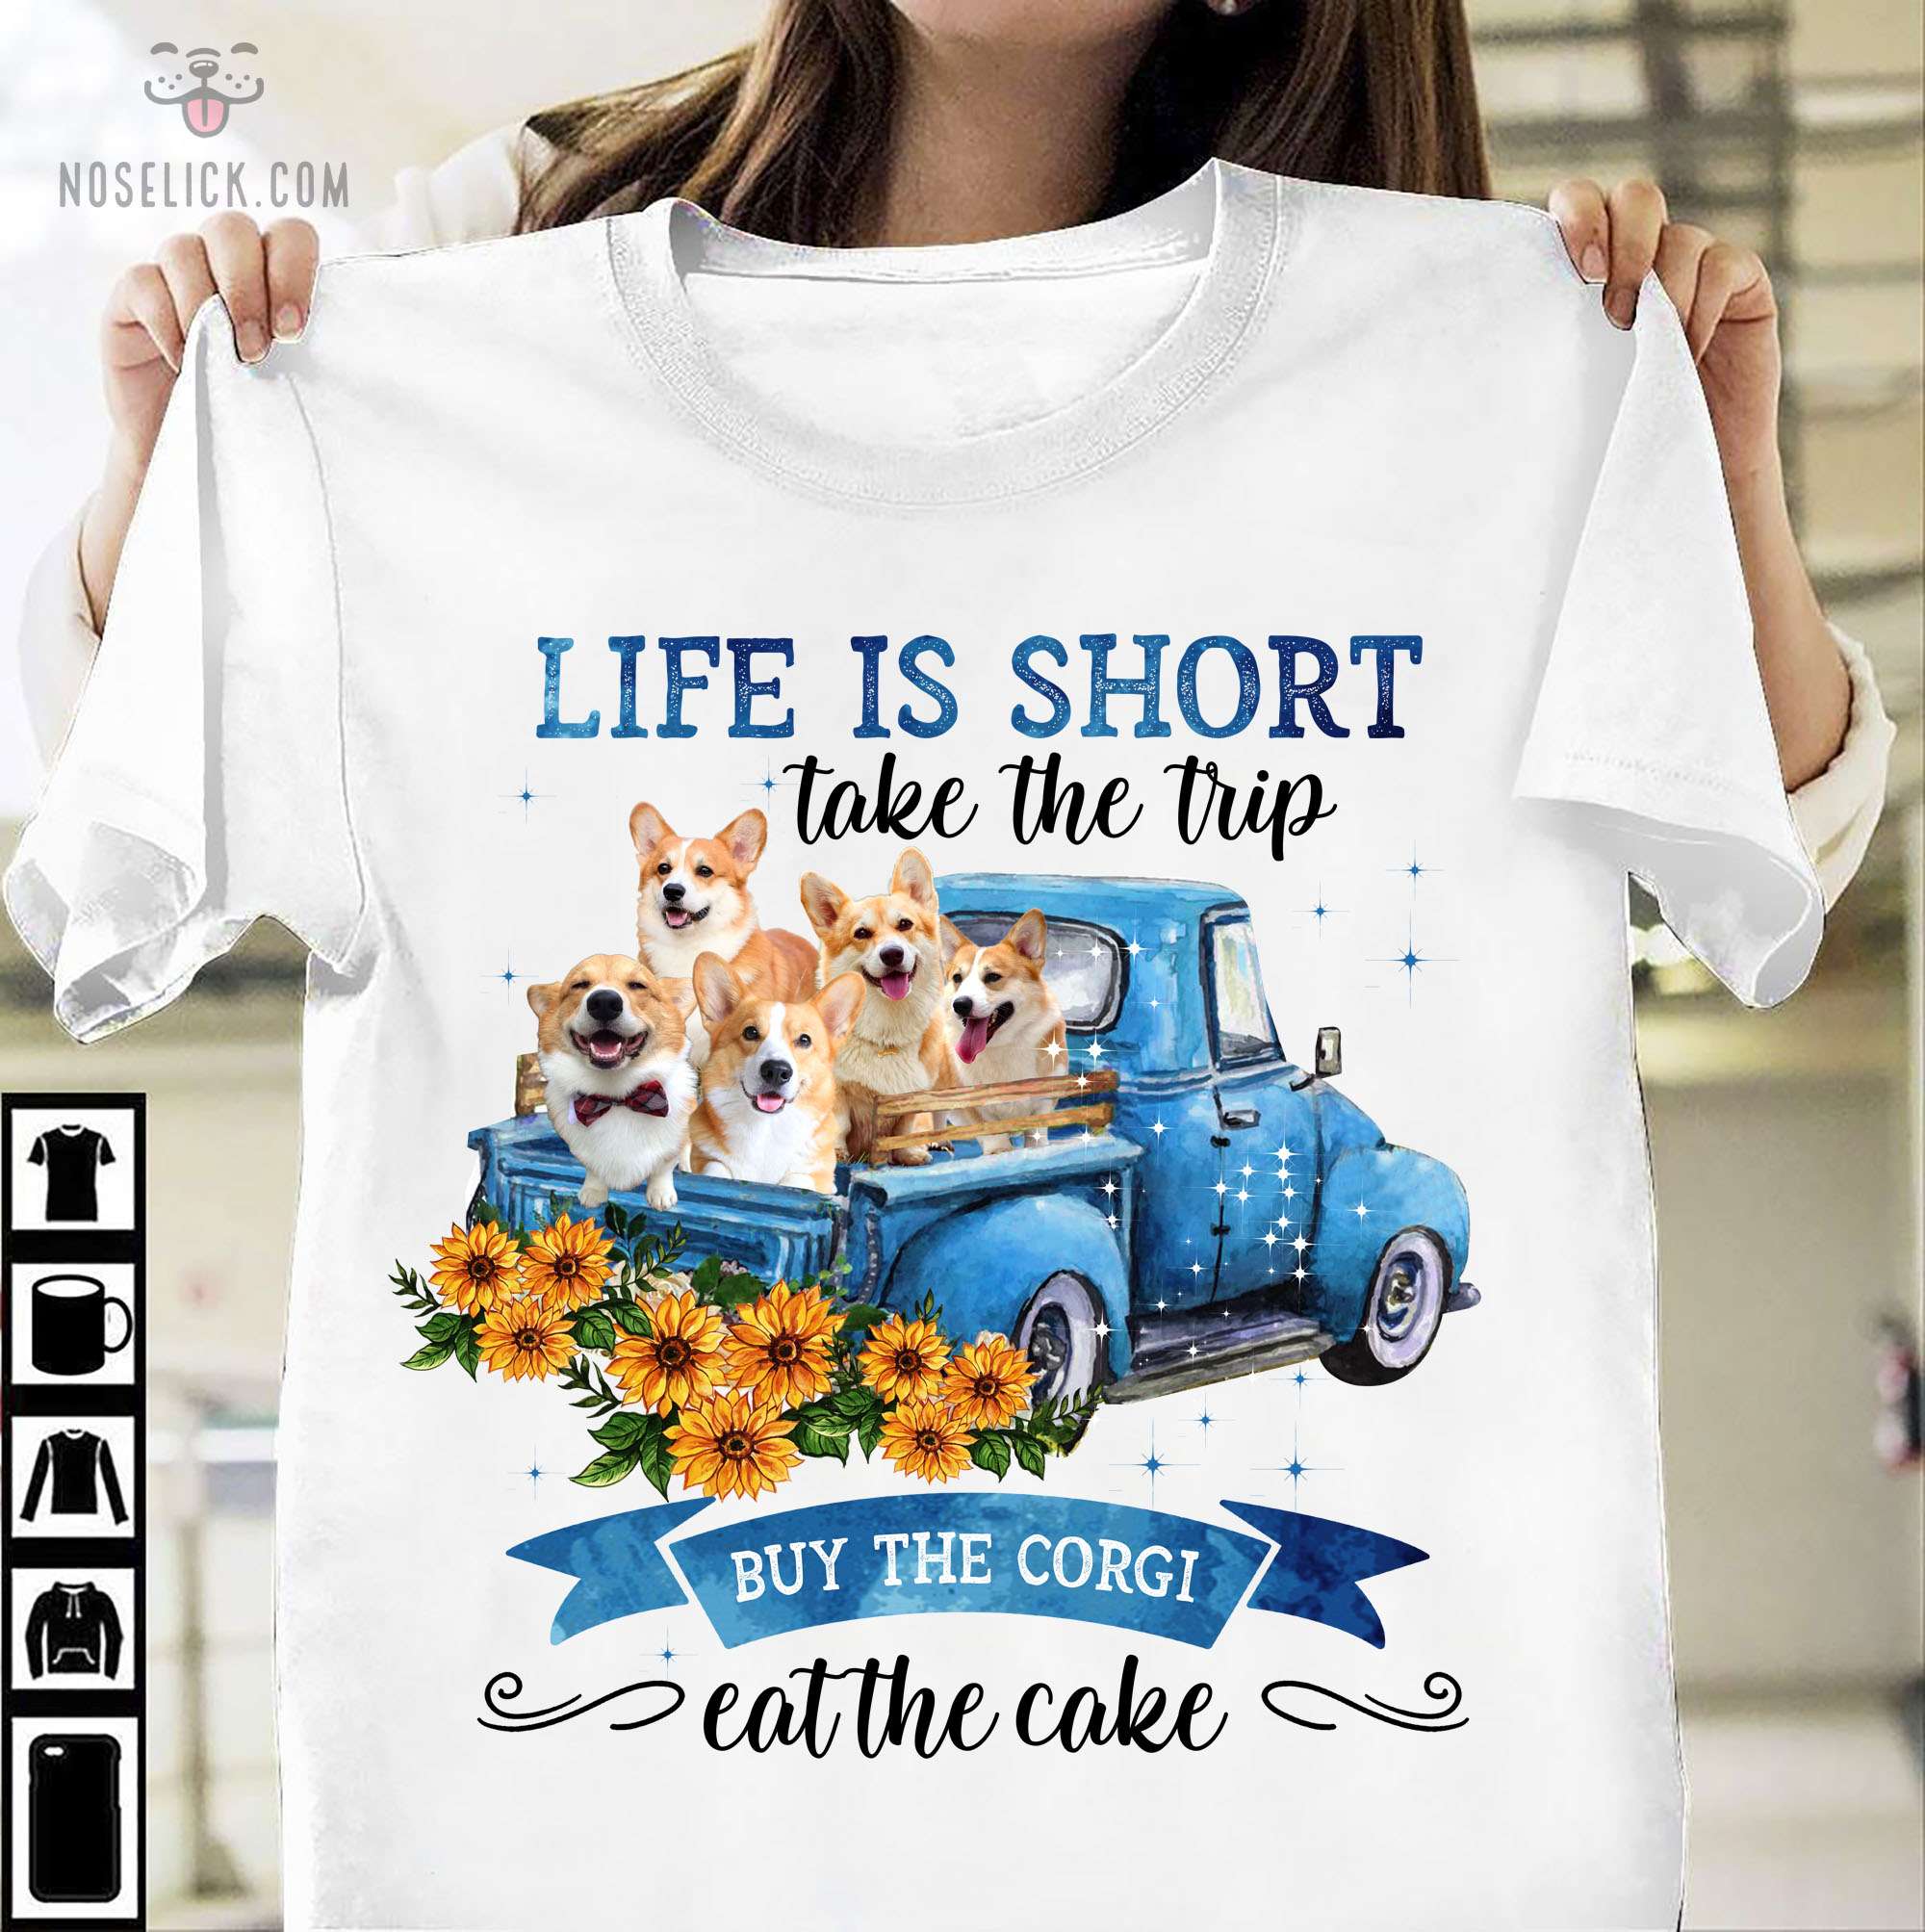 Life is short take the trip buy the Corgi eat the cake - Corgi on truck